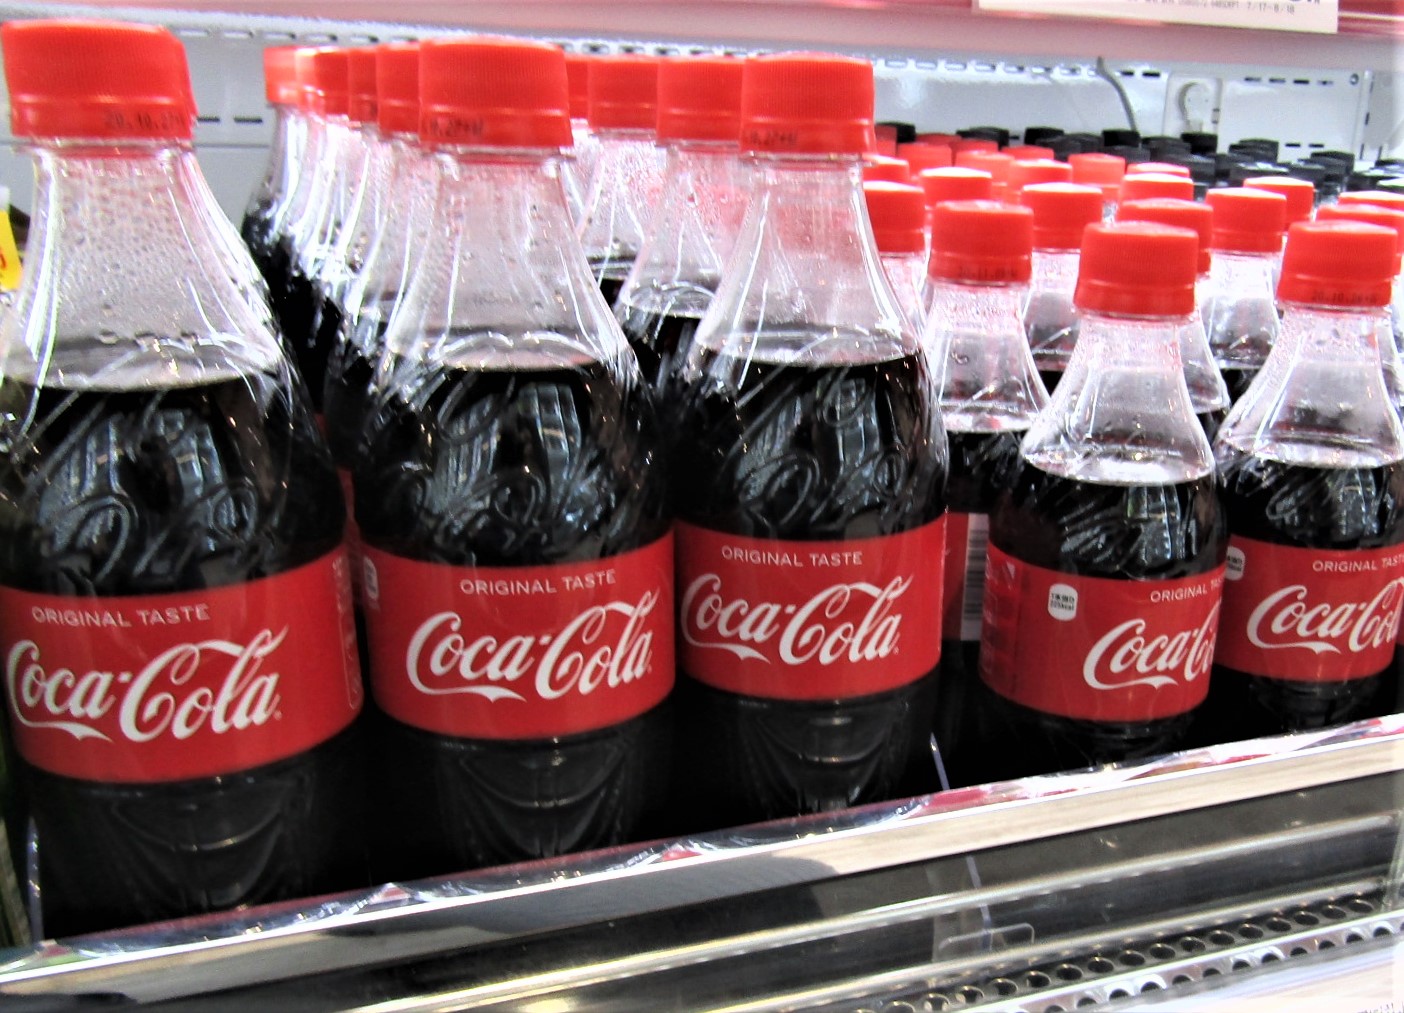 コカ コーラ社製品 免疫にも着目 在宅時間増 宅配拡大など消費変化に迅速対応 食品新聞社